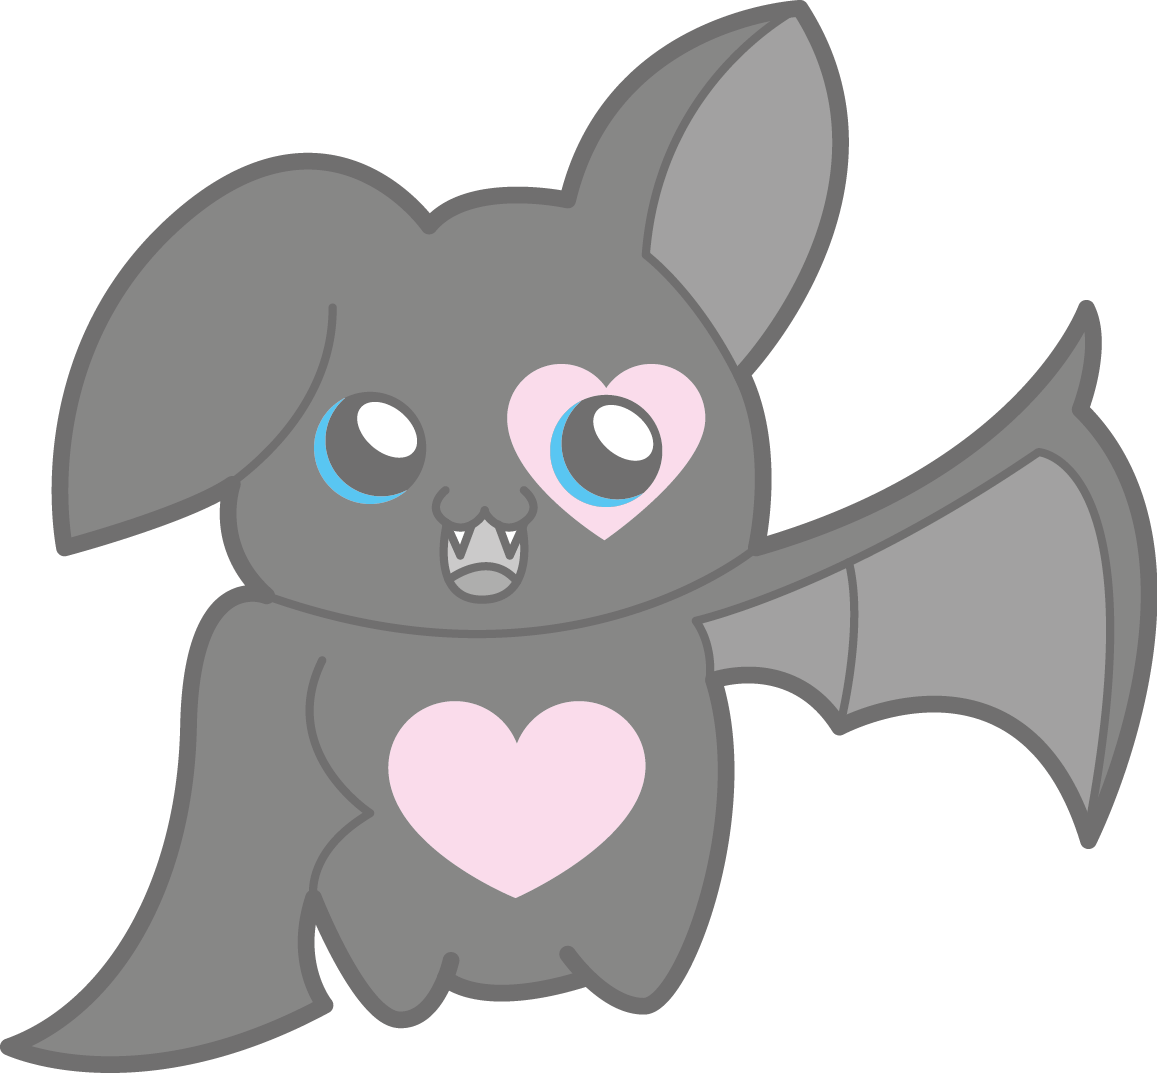 kawaii clipart bat